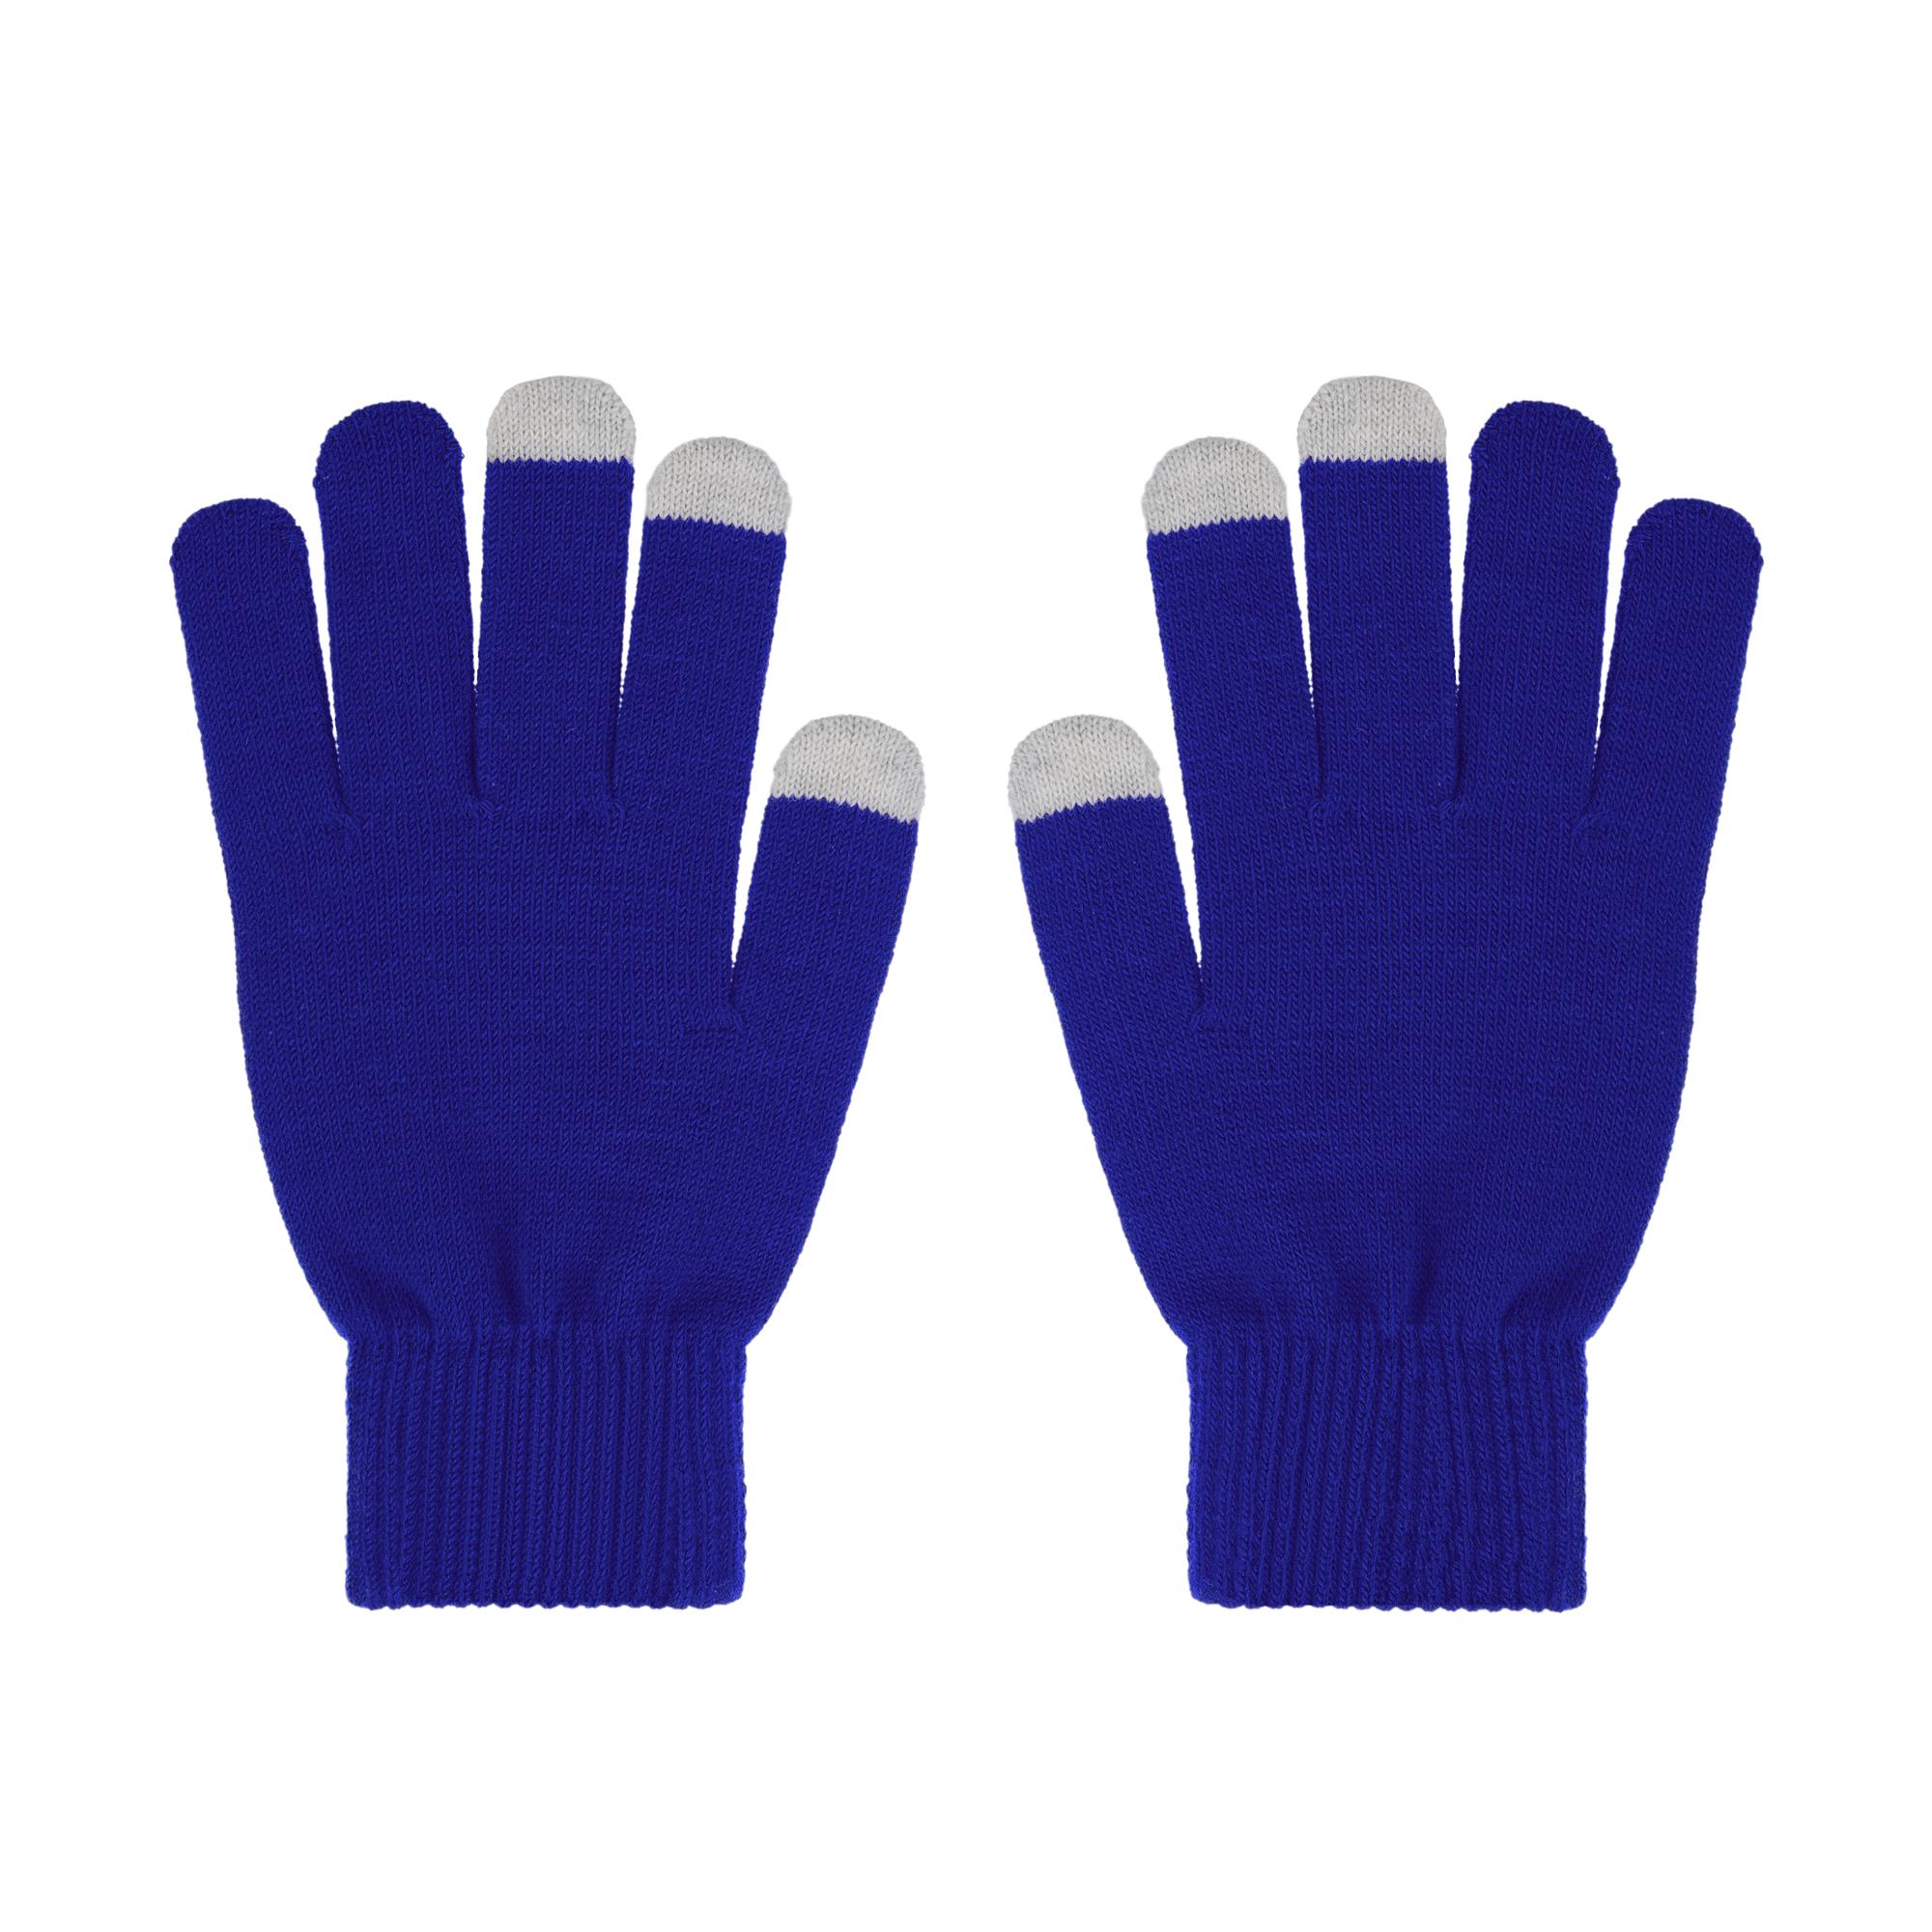 Перчатки женские для работы с сенсорными экранами, синие#, цвет синий